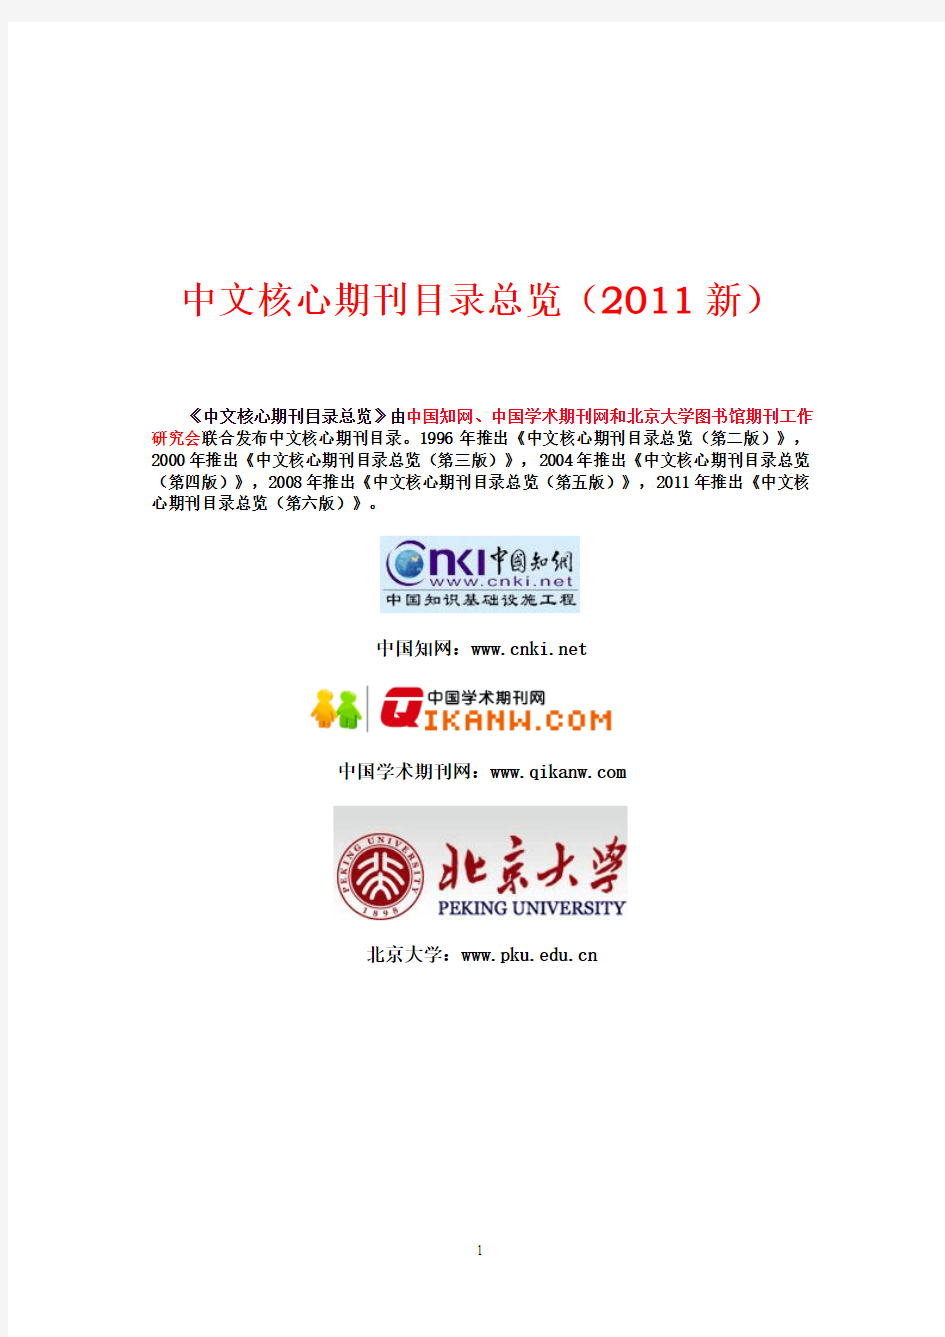 1、北京大学中文核心期刊目录总览(2011新)